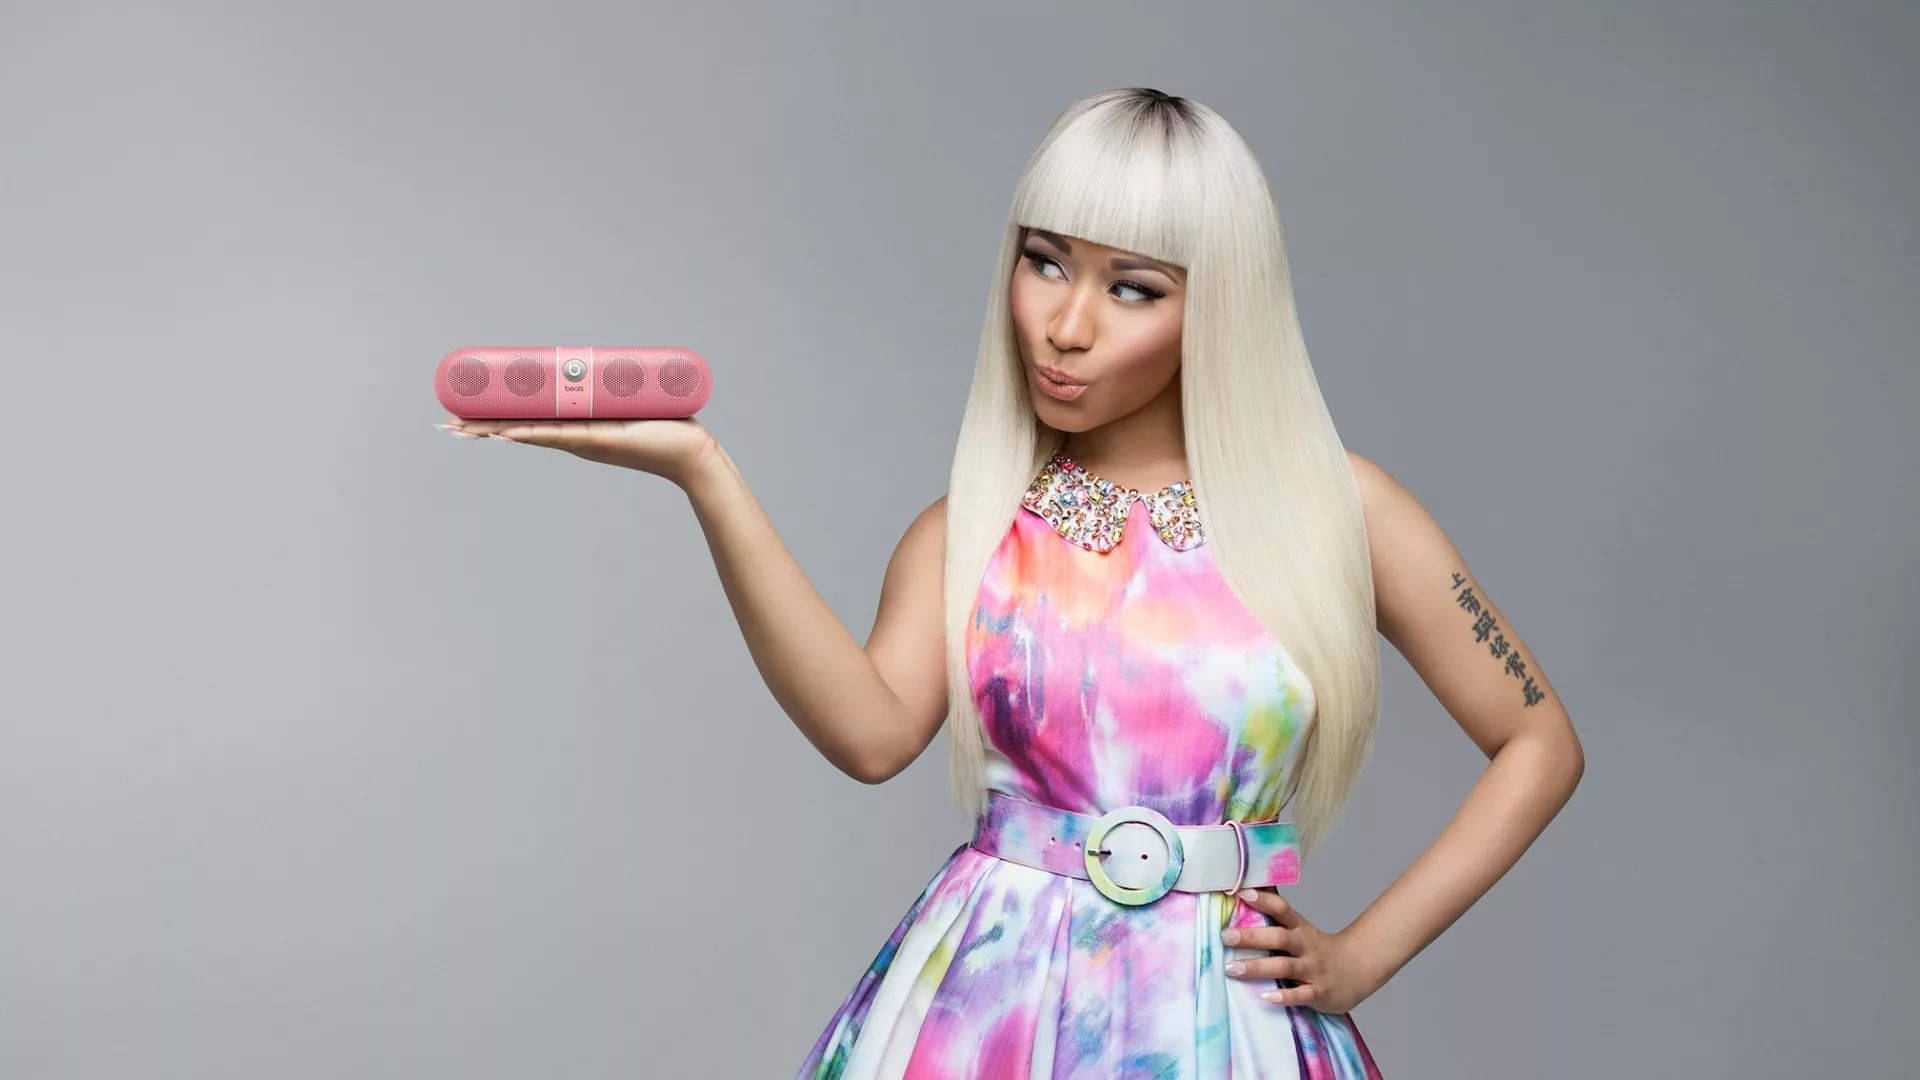 Nicki Minaj With White Hair Background